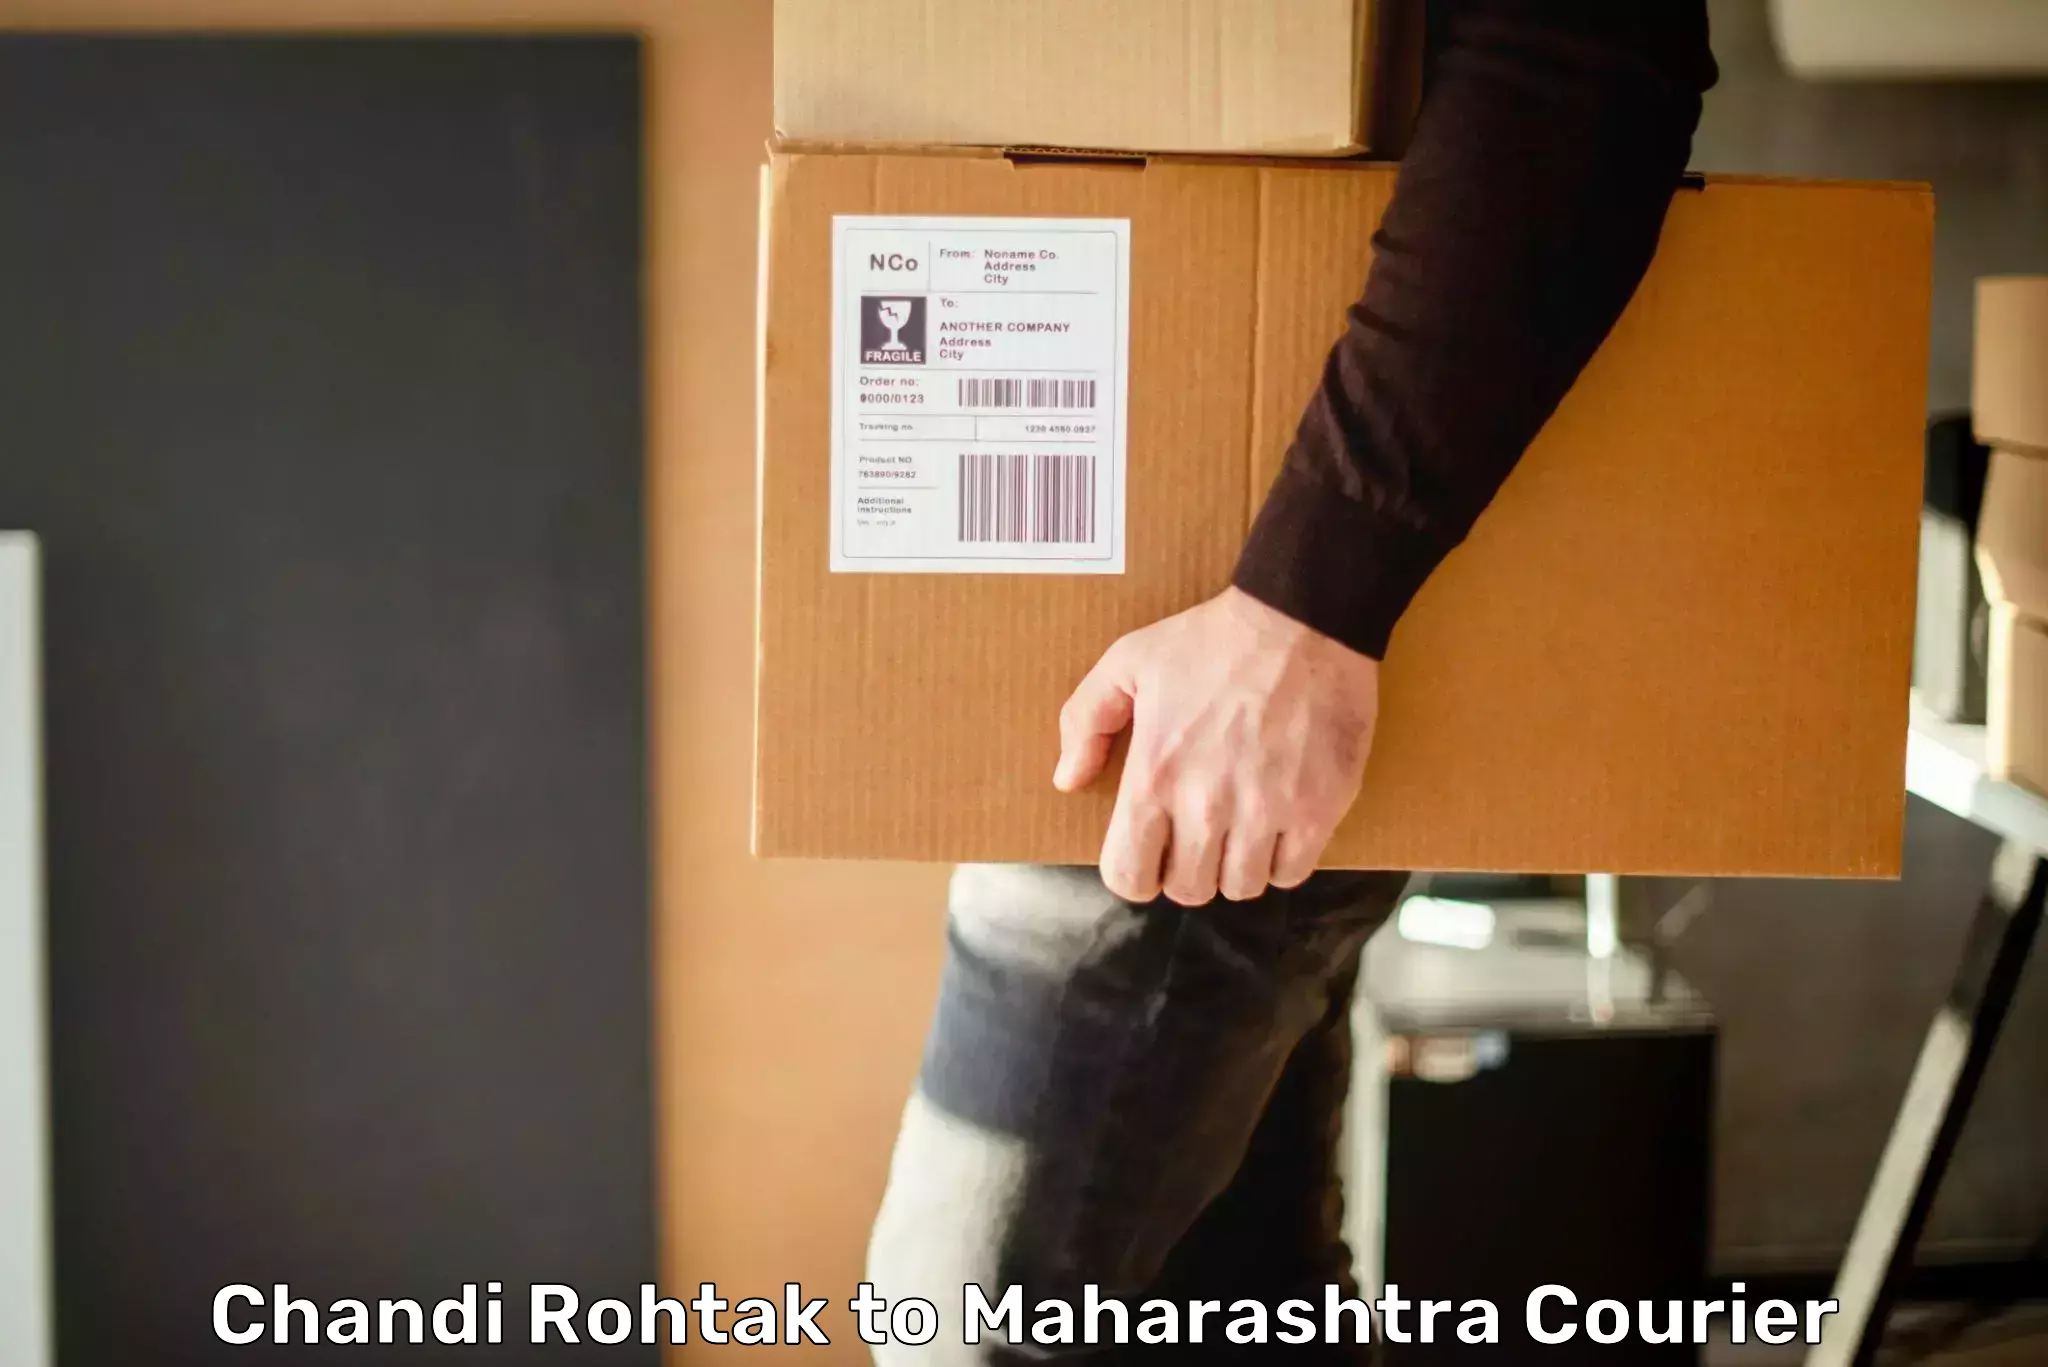 Cargo delivery service Chandi Rohtak to Maharashtra